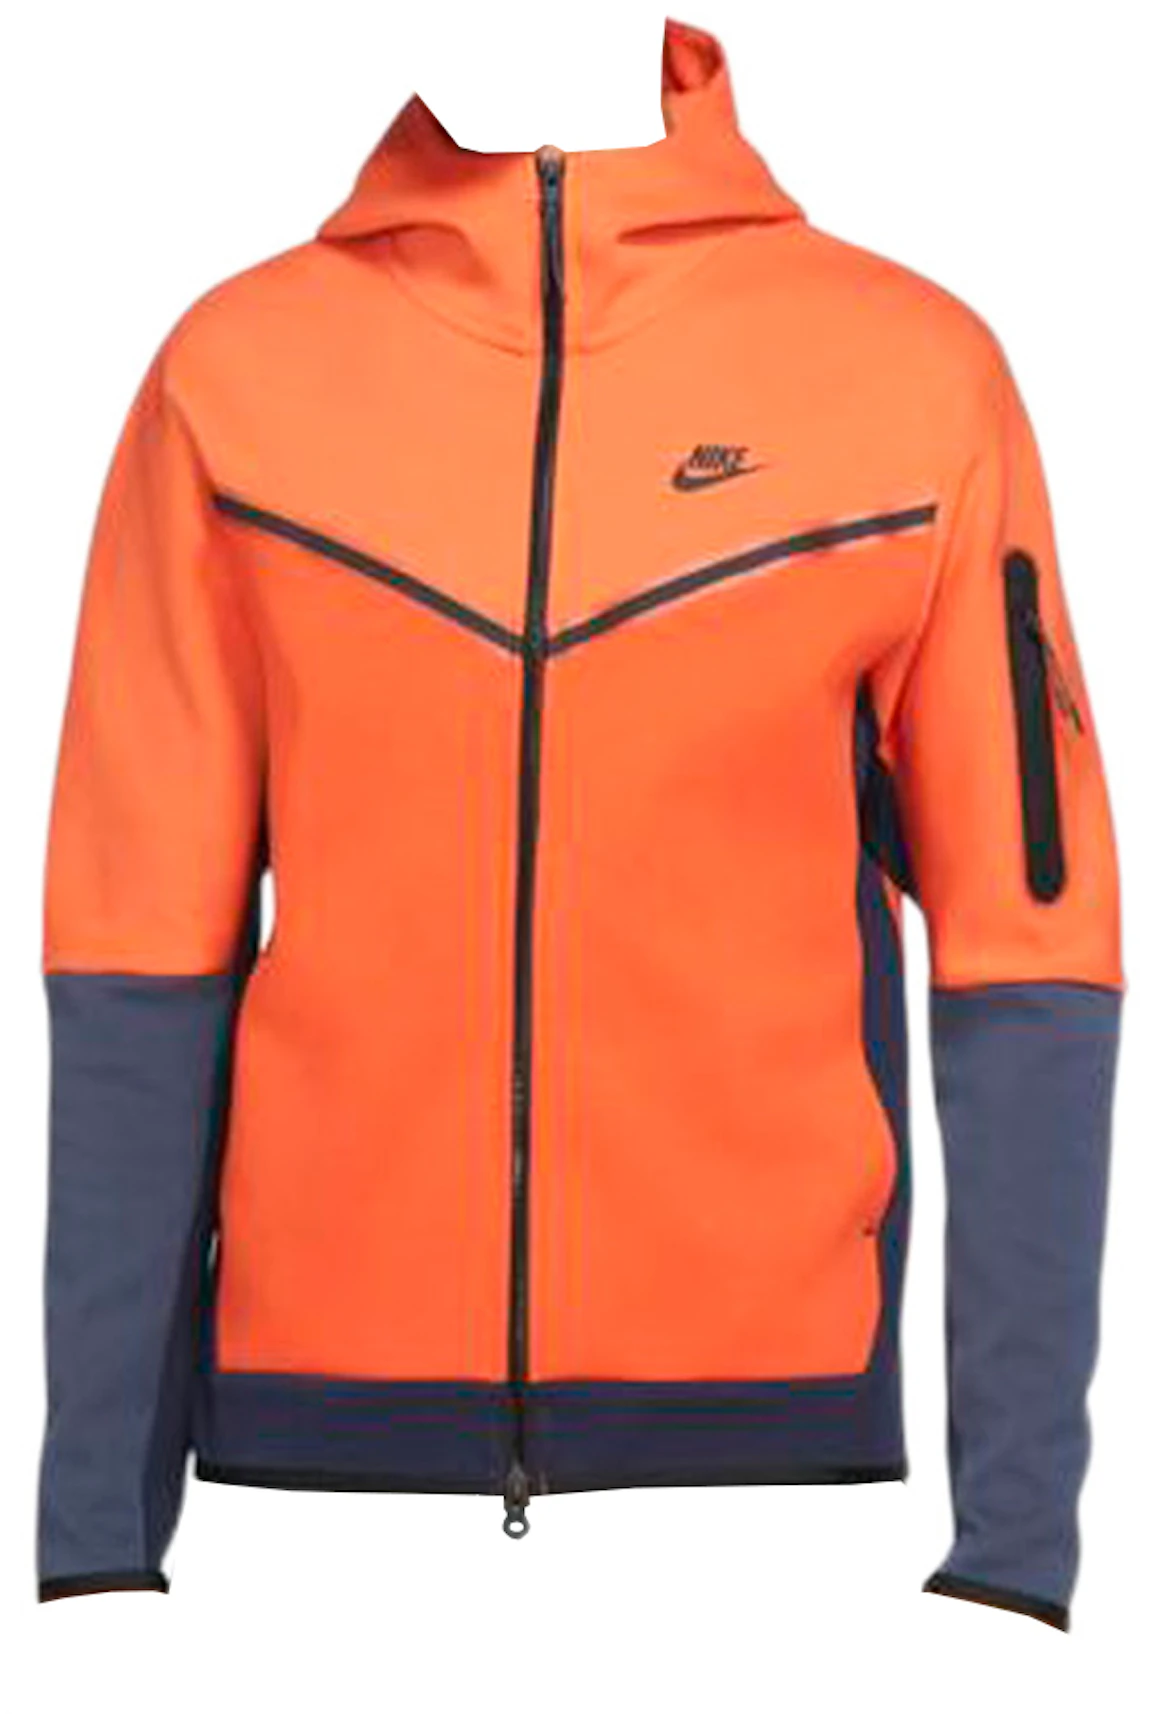 Nike Tech Fleece Orange | canoeracing.org.uk